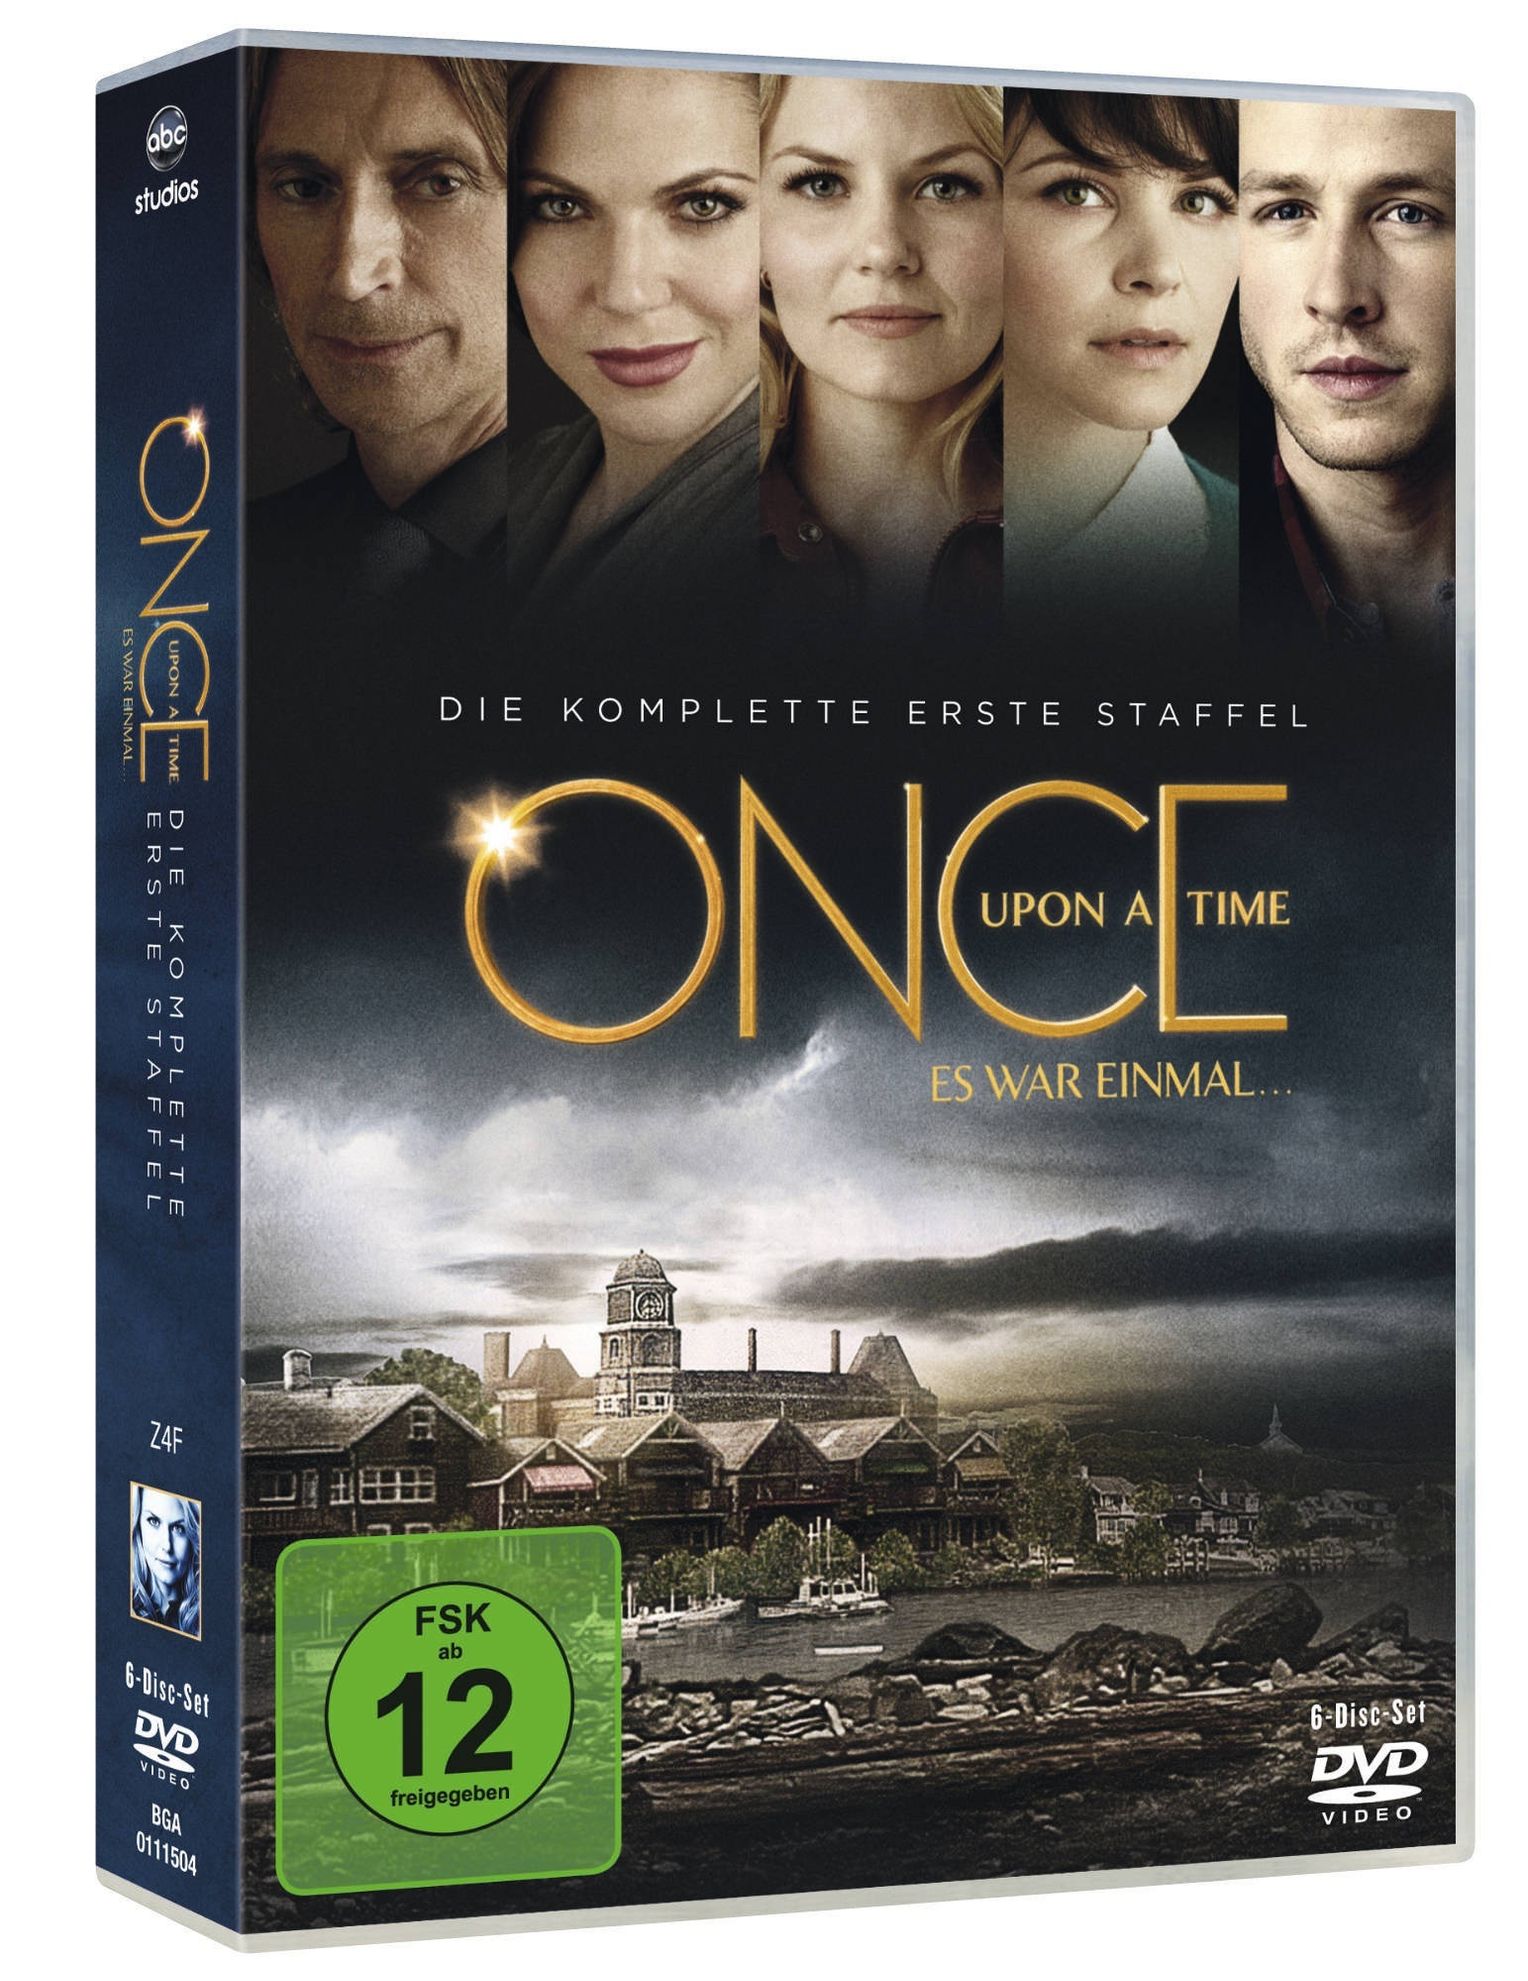 Once Upon a Time: Es war einmal - Staffel 1 DVD | Weltbild.ch